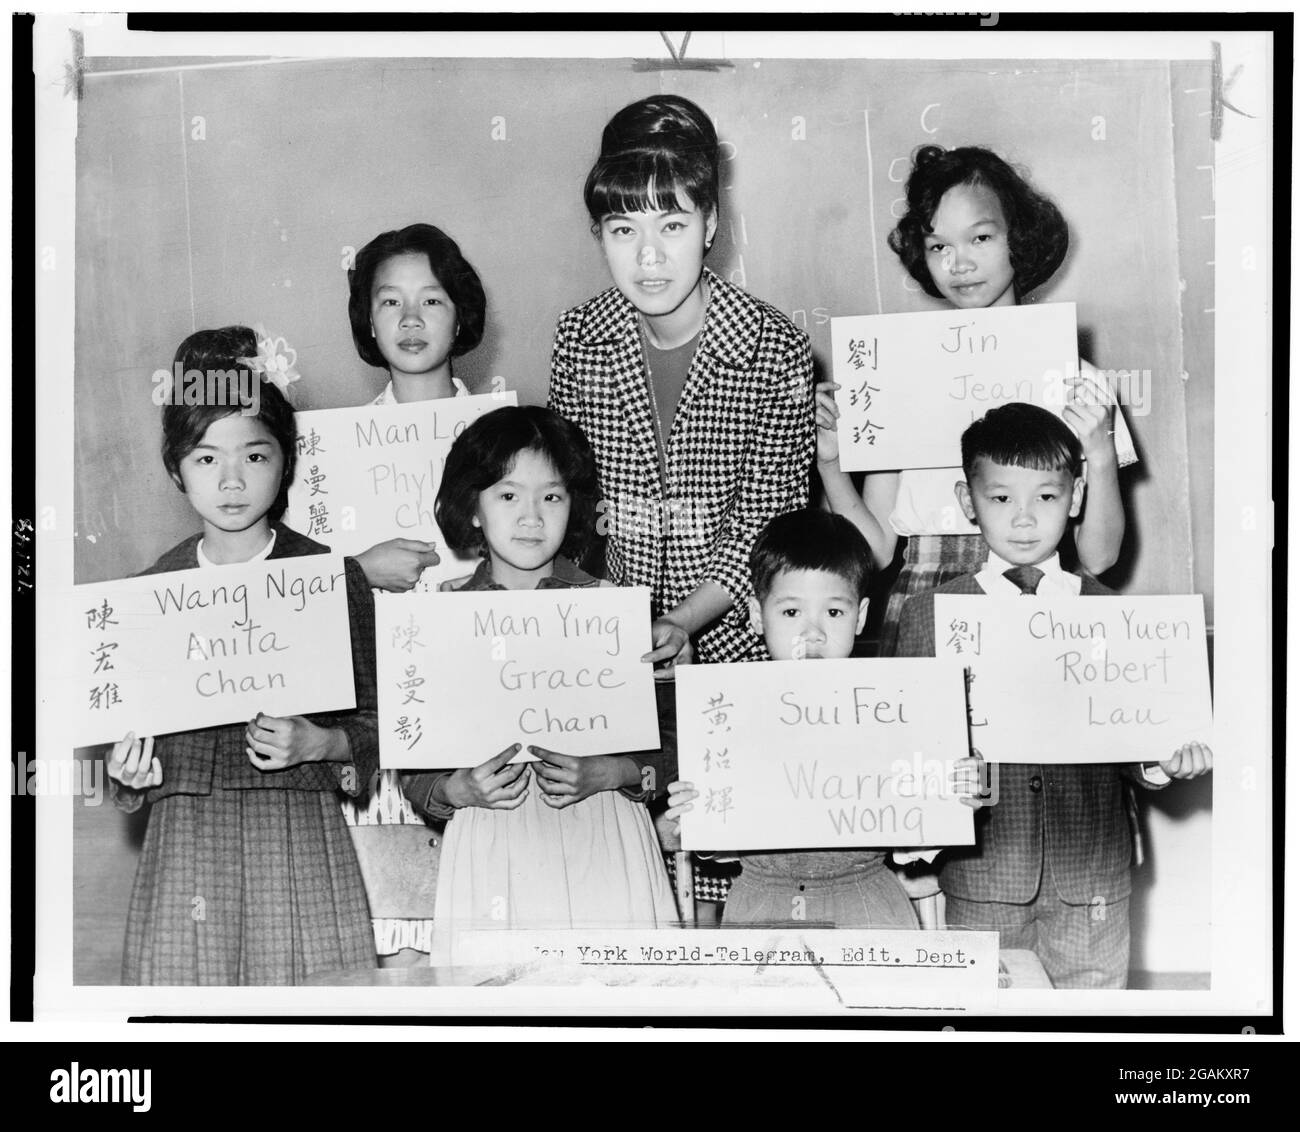 Miss April Lou, Lehrerin an der PS 1, Manhattan, mit sechs chinesischen Kindern, die kürzlich aus Hongkong und Formosa kamen, die Plakate mit seinem chinesischen Namen (sowohl in Ideographien als auch in Transliteration) und dem Namen, der in offizielle Schulunterlagen eingetragen werden soll, in New York, NY, 1964, halten. (Foto von Fred Palumbo/New York World-Telegram & Sun Collection/RBM Vintage Images) Stockfoto